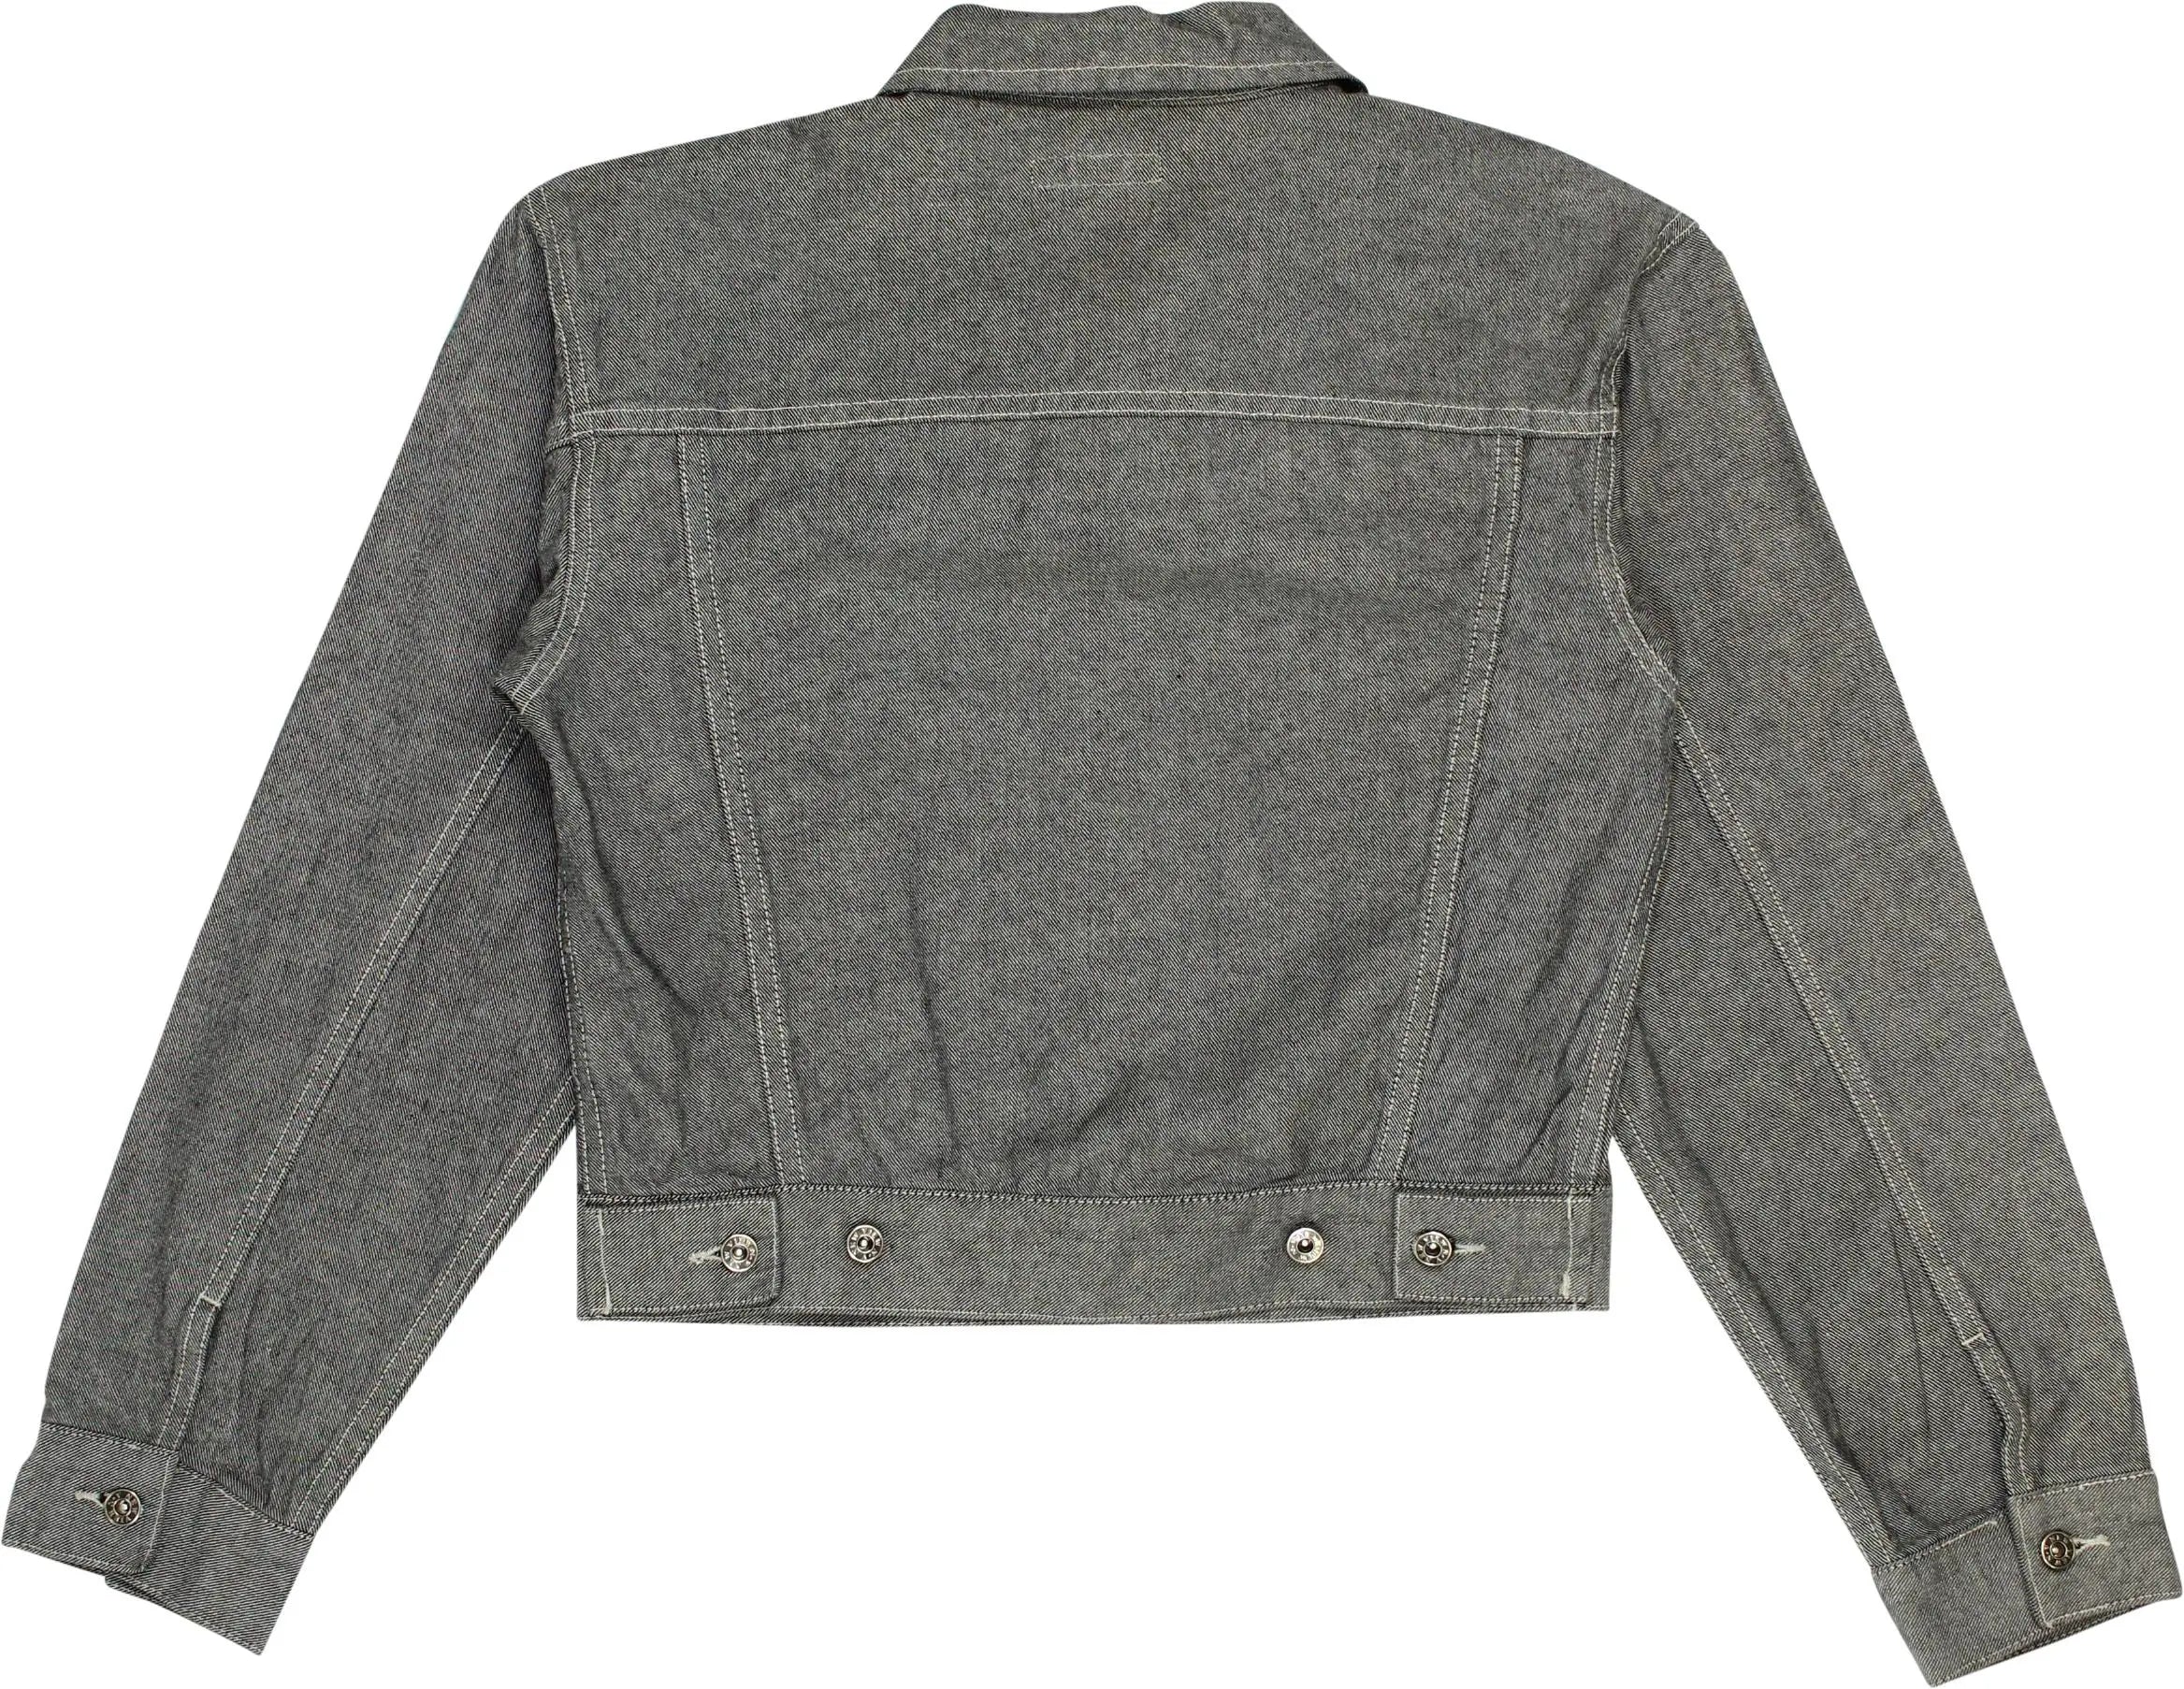 Denim & Co - Grey Denim Jacket- ThriftTale.com - Vintage and second handclothing